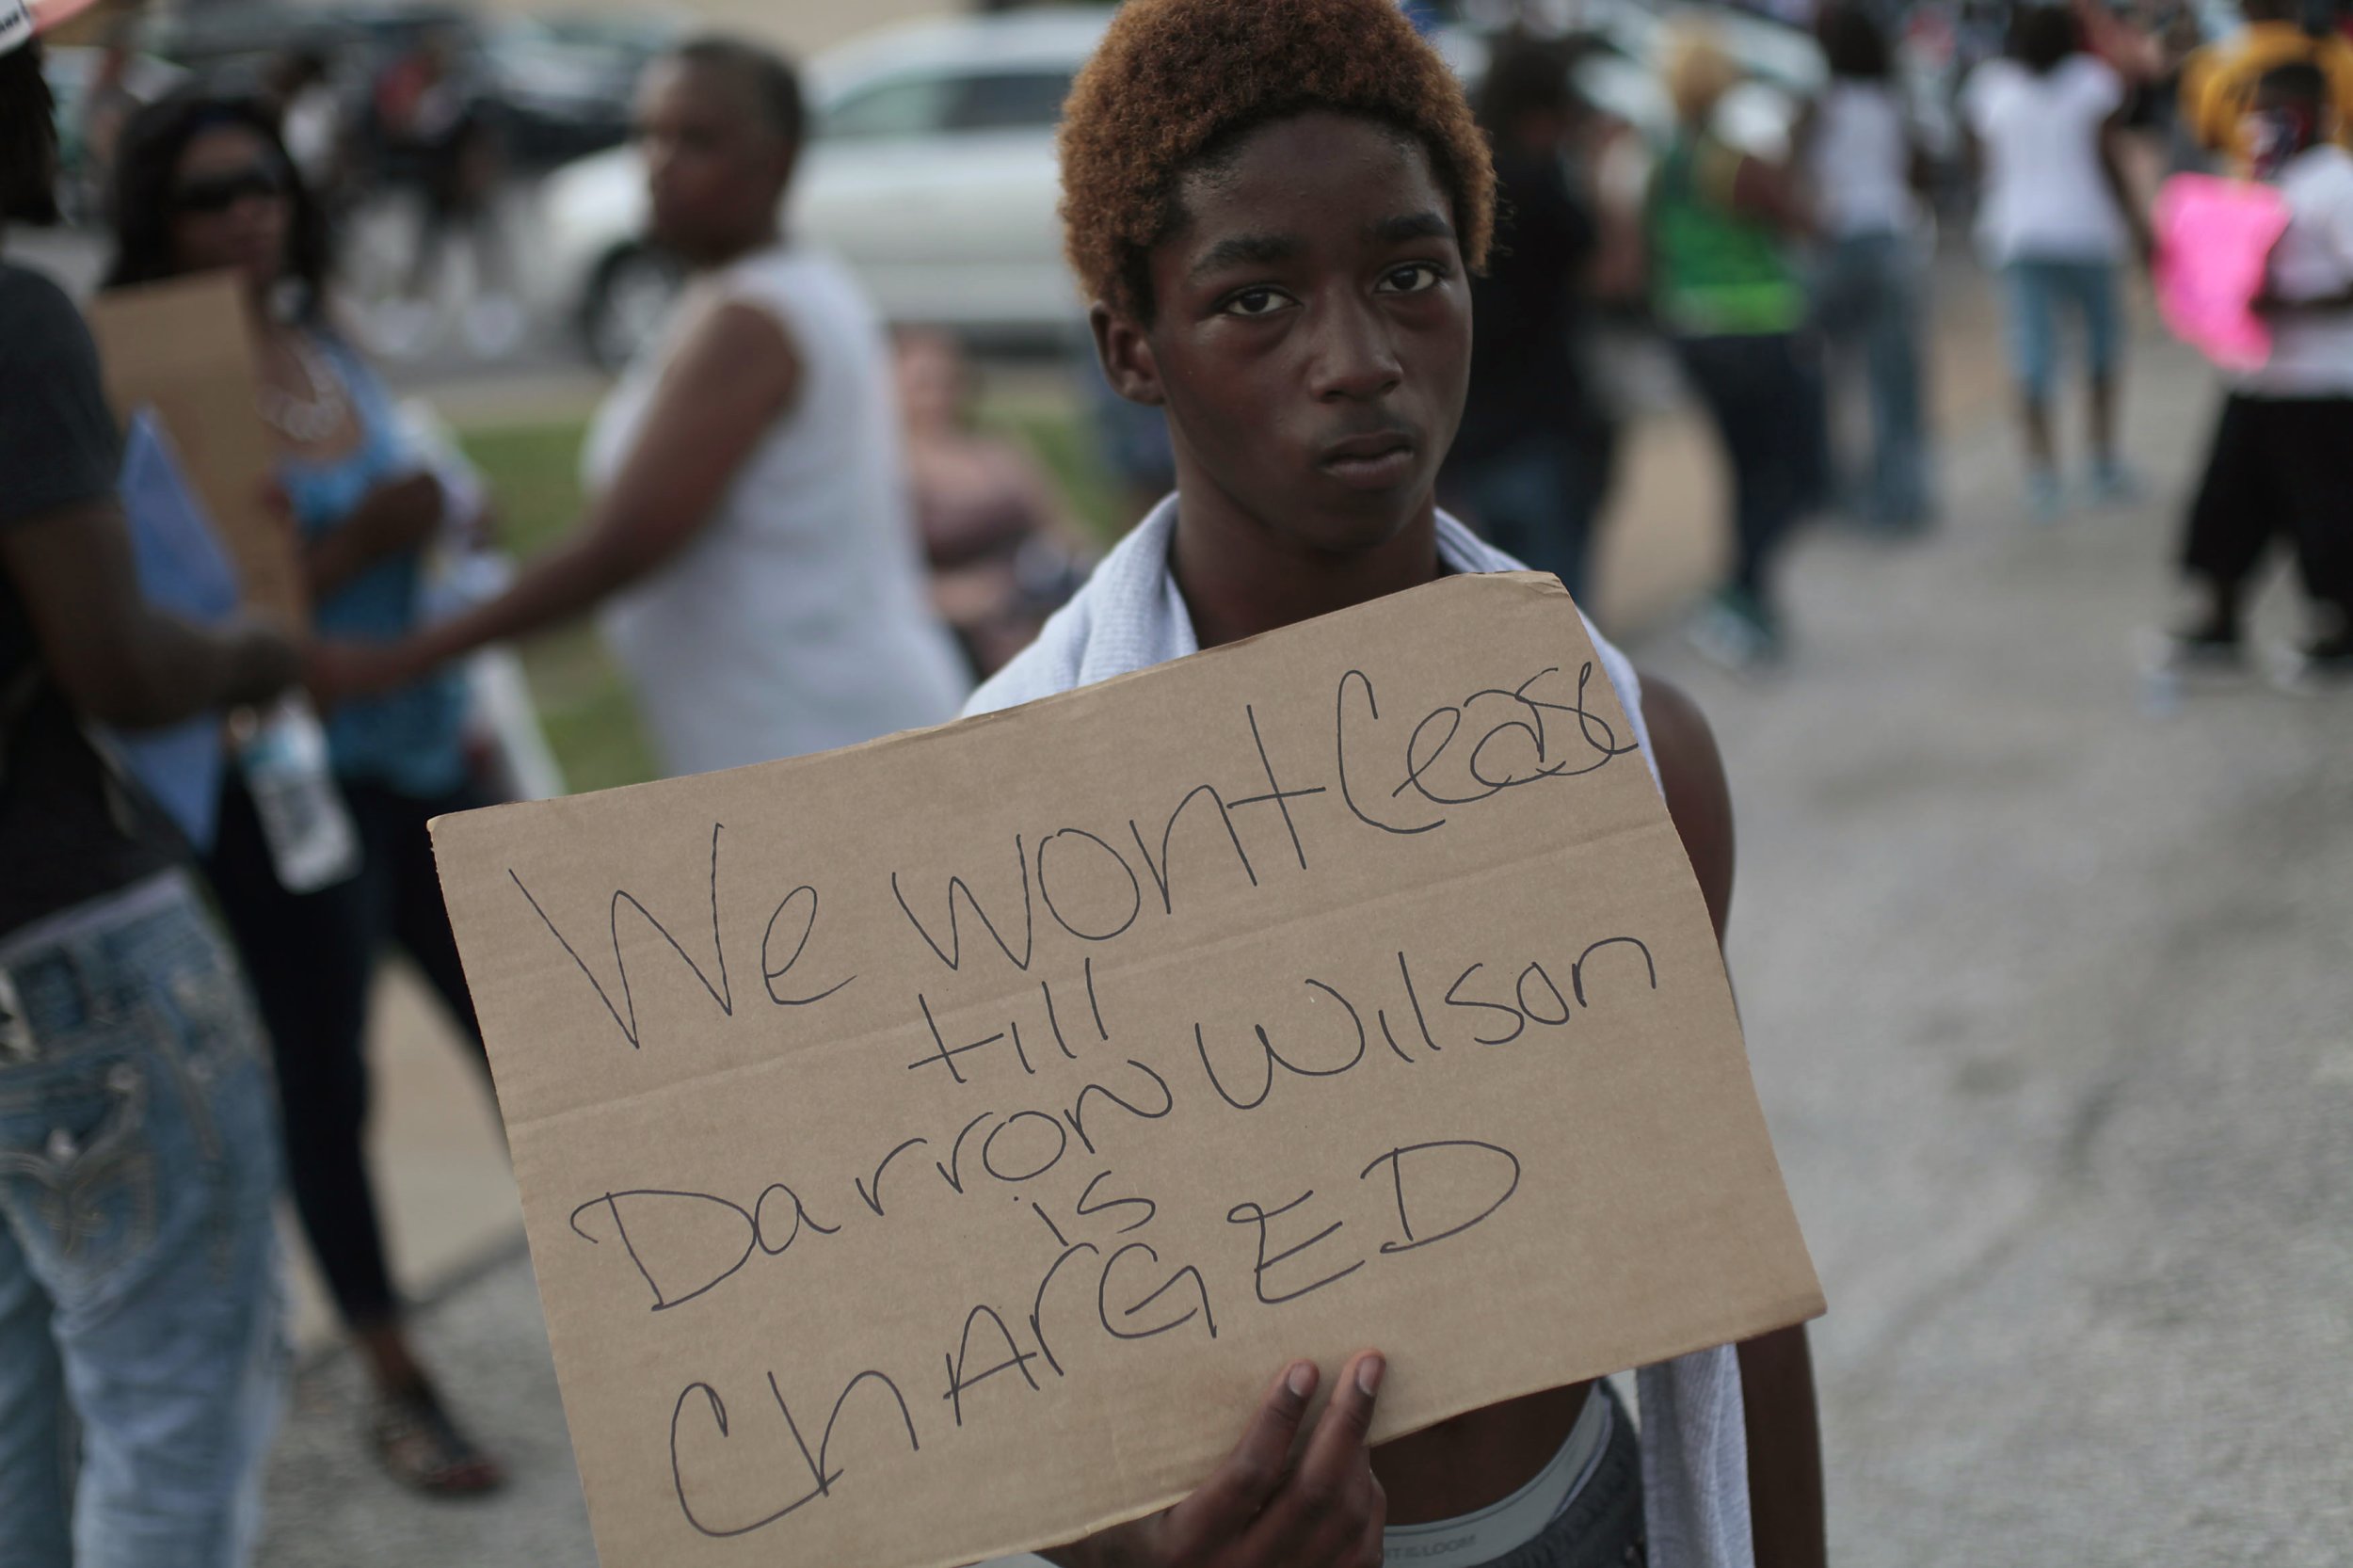 Ferguson demonstrator holds sign